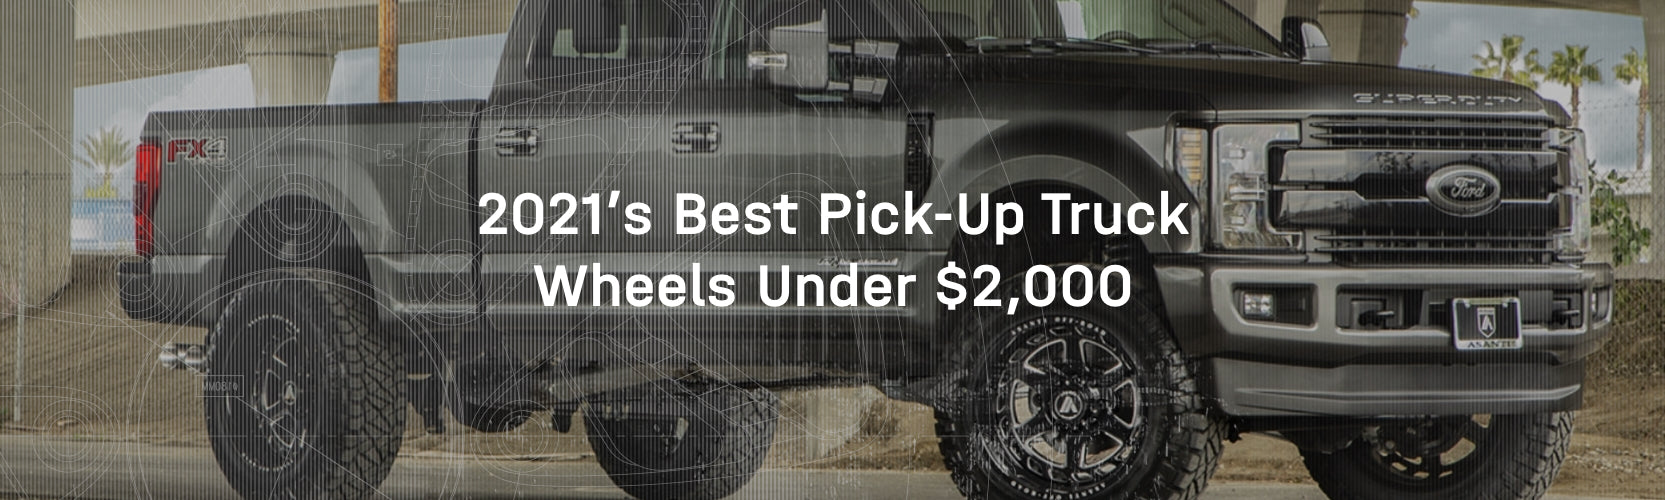 2021’s Best Pick-Up Truck Wheels Under $2,000